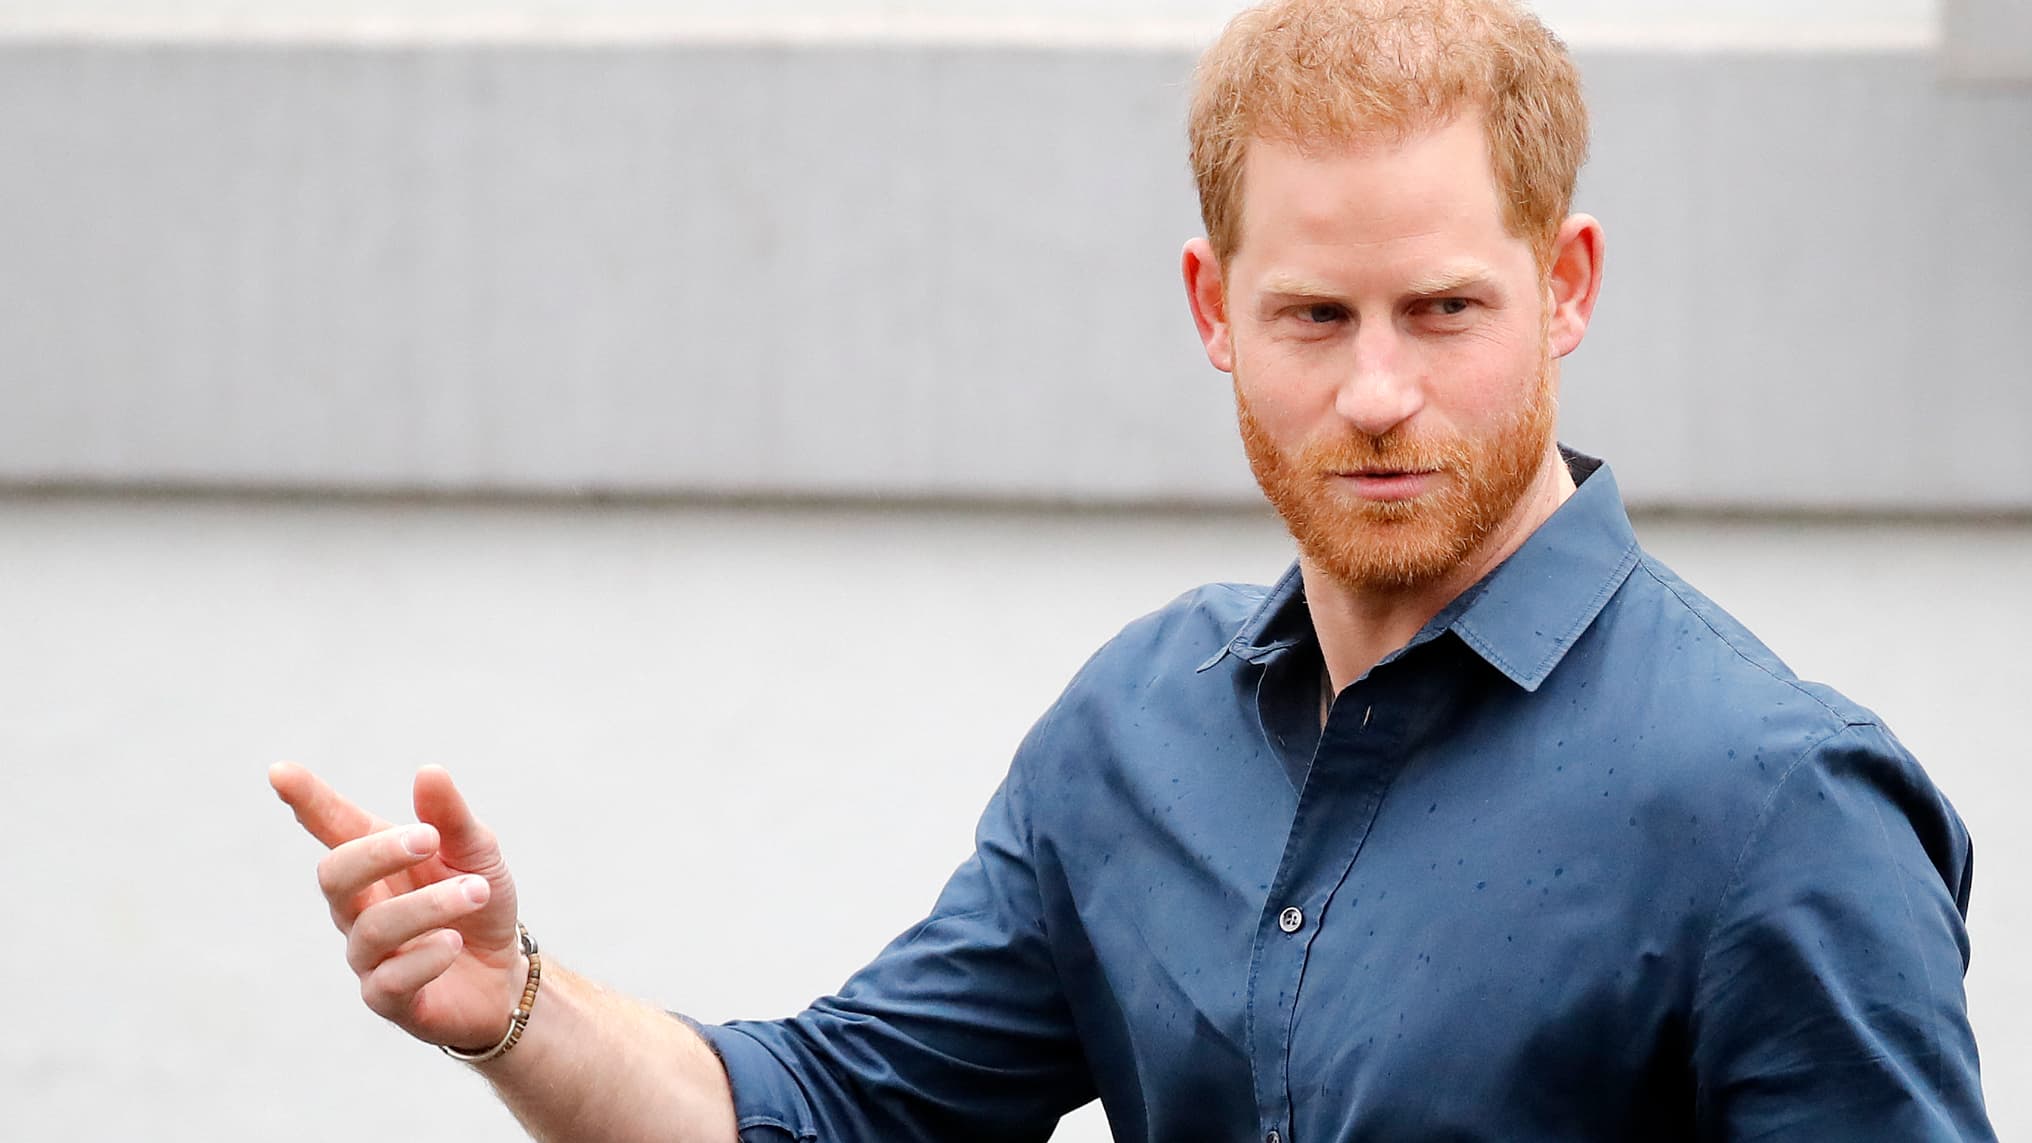 Książę Harry niespodziewanie pojawia się w Londynie na procesie przeciwko wydawcy Daily Mail